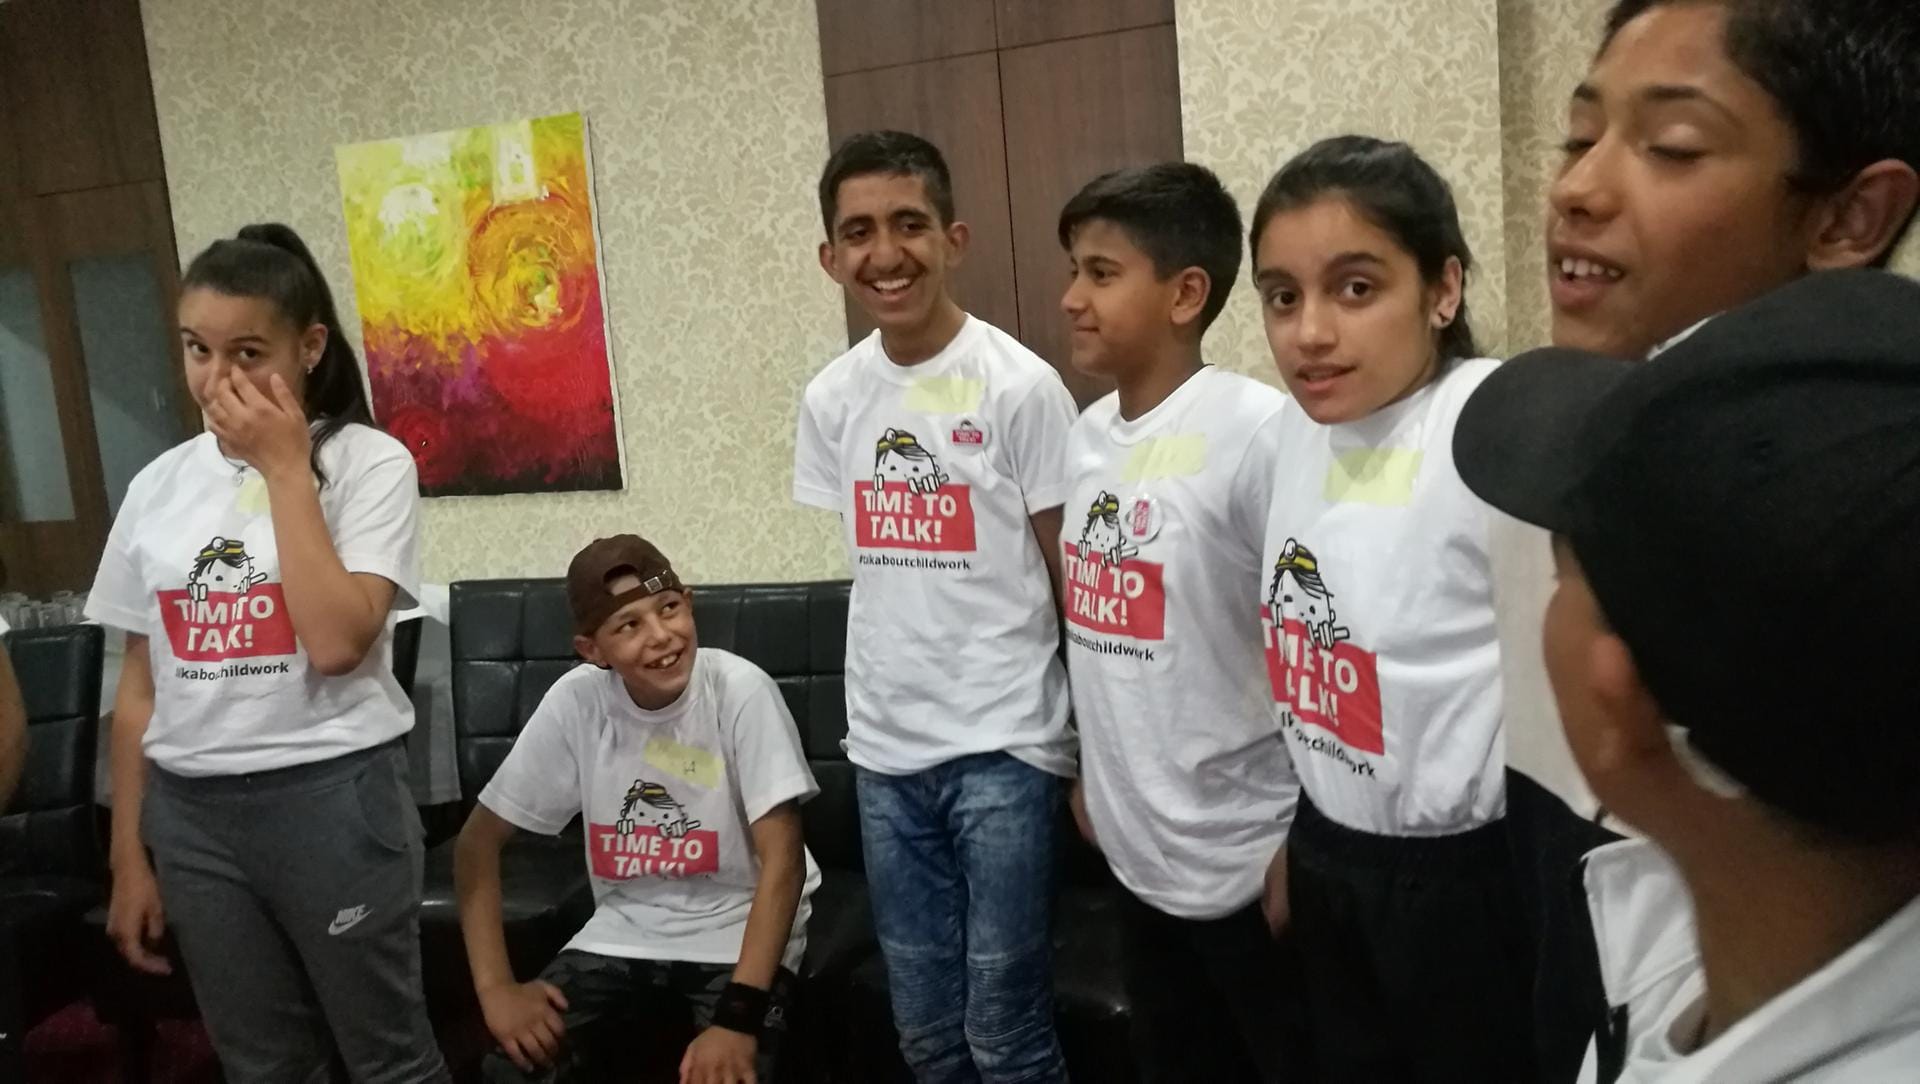 In der weltweiten Kampagne "Time to Talk!" hat die Kindernothilfe arbeitende Mädchen und Jungen zu ihren Ansichten und Lösungsvorschlägen befragt.